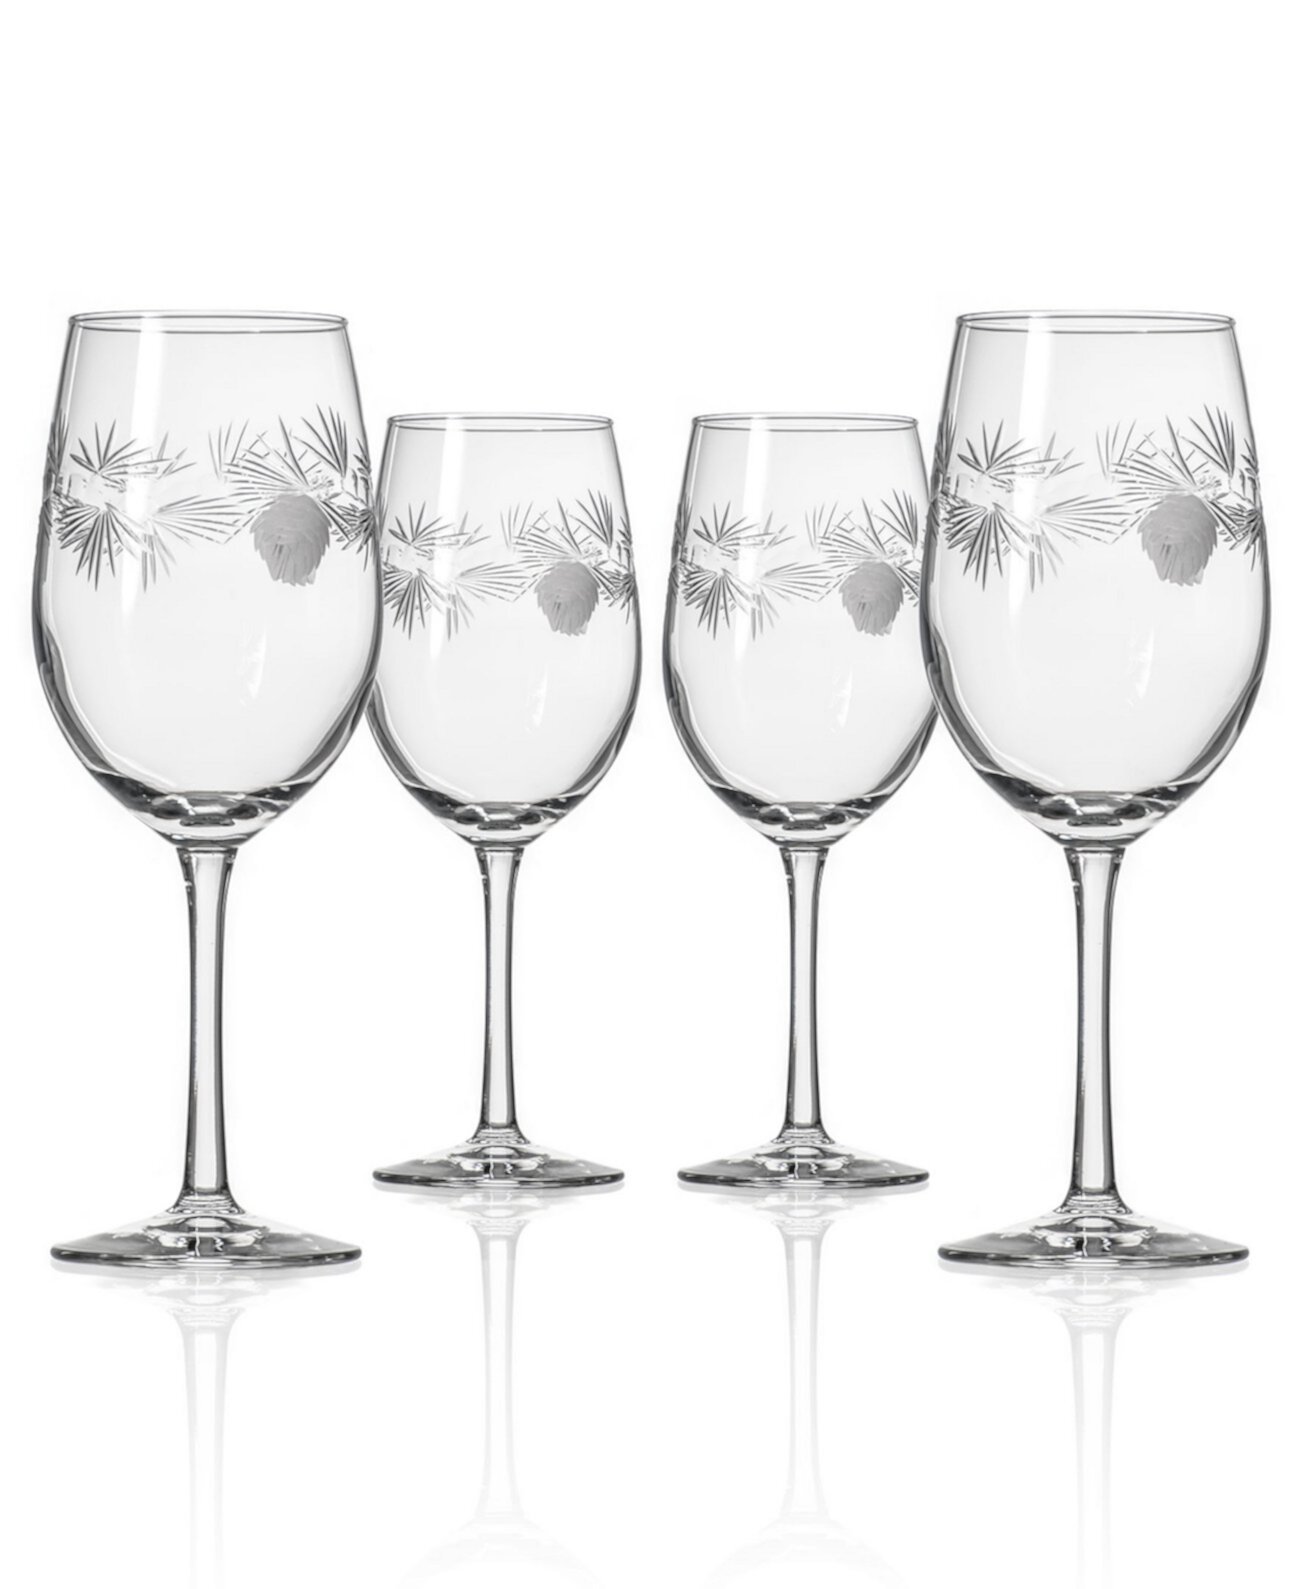 Ледяное белое вино из сосны, 12 унций - набор из 4 бокалов Rolf Glass